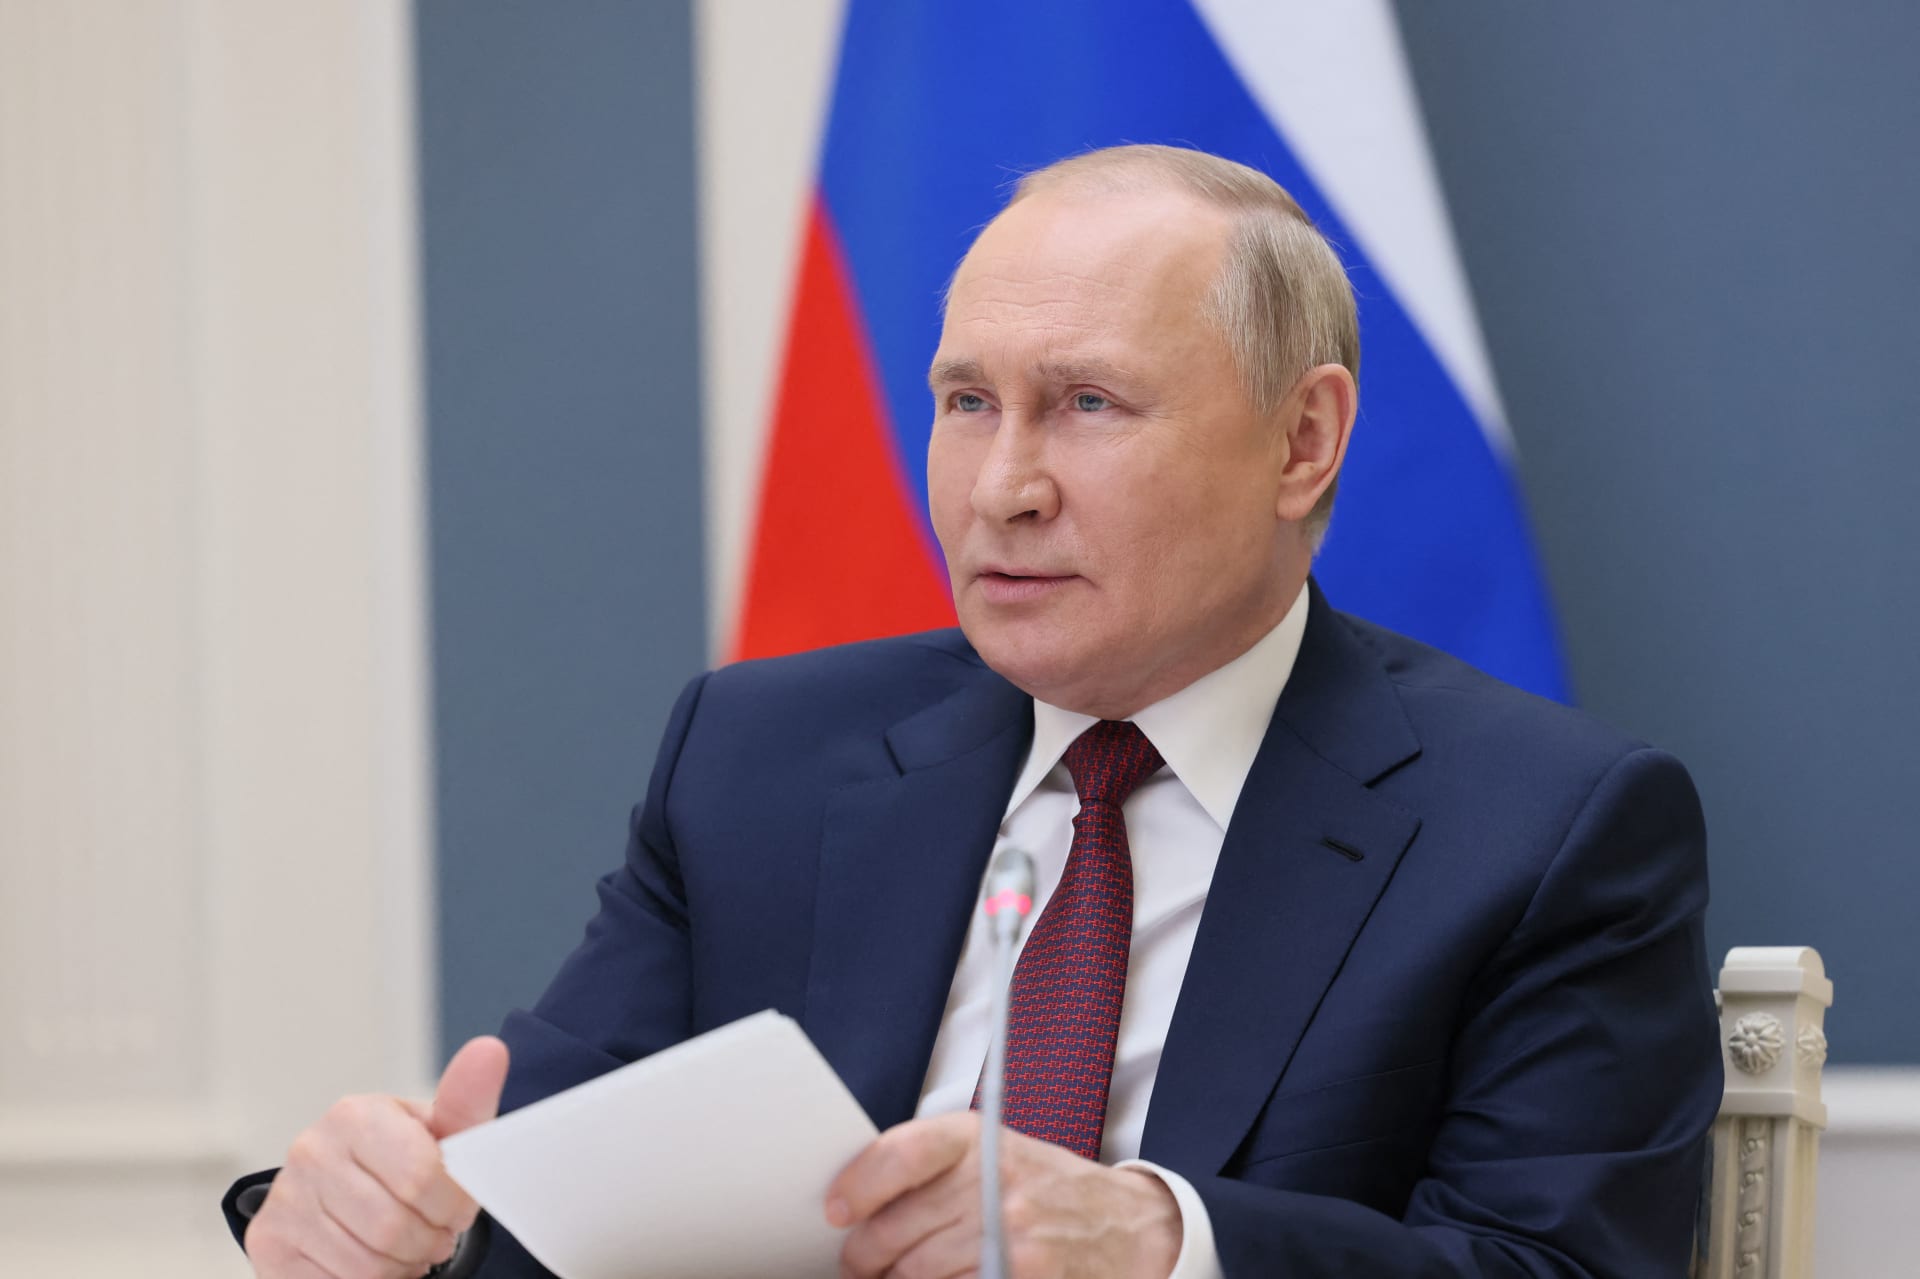 "بوتين": الغرب يريد تدمير روسيا وتقسيمها لأجزاء وإخضاعها لسلطته واستغلال مواردها